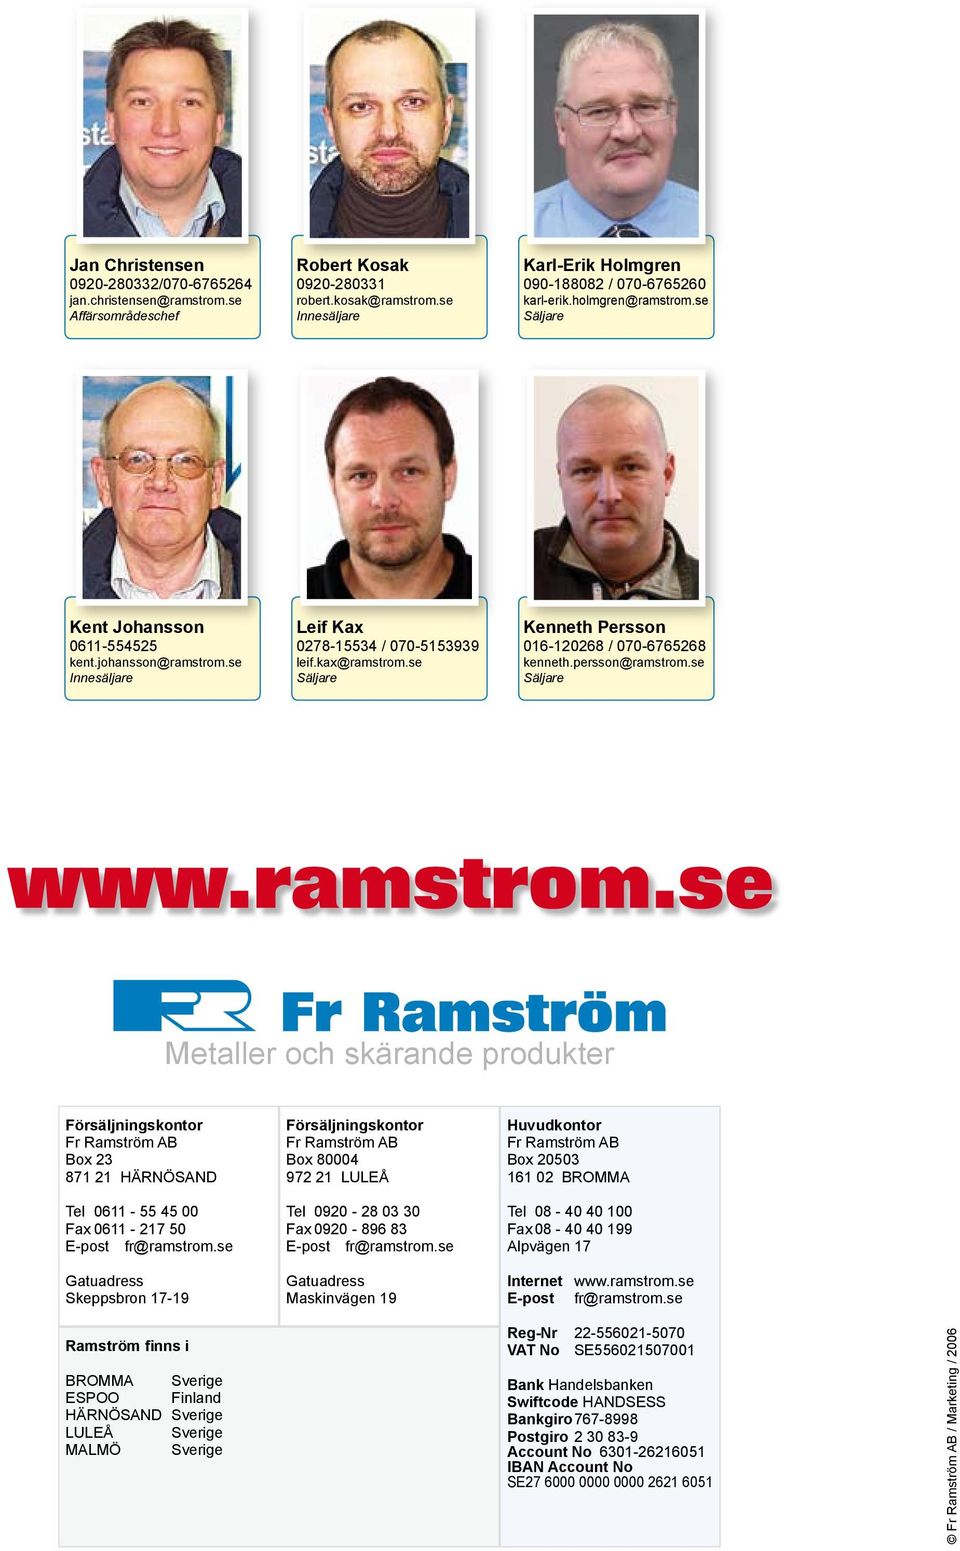 persson@ramstrom.se Säljare Metaller och ande produkter Försäljningskontor Fr Ramström AB Box 23 871 21 HÄRNÖSAND Tel 611-55 45 Fax 611-217 5 E-post fr@ramstrom.